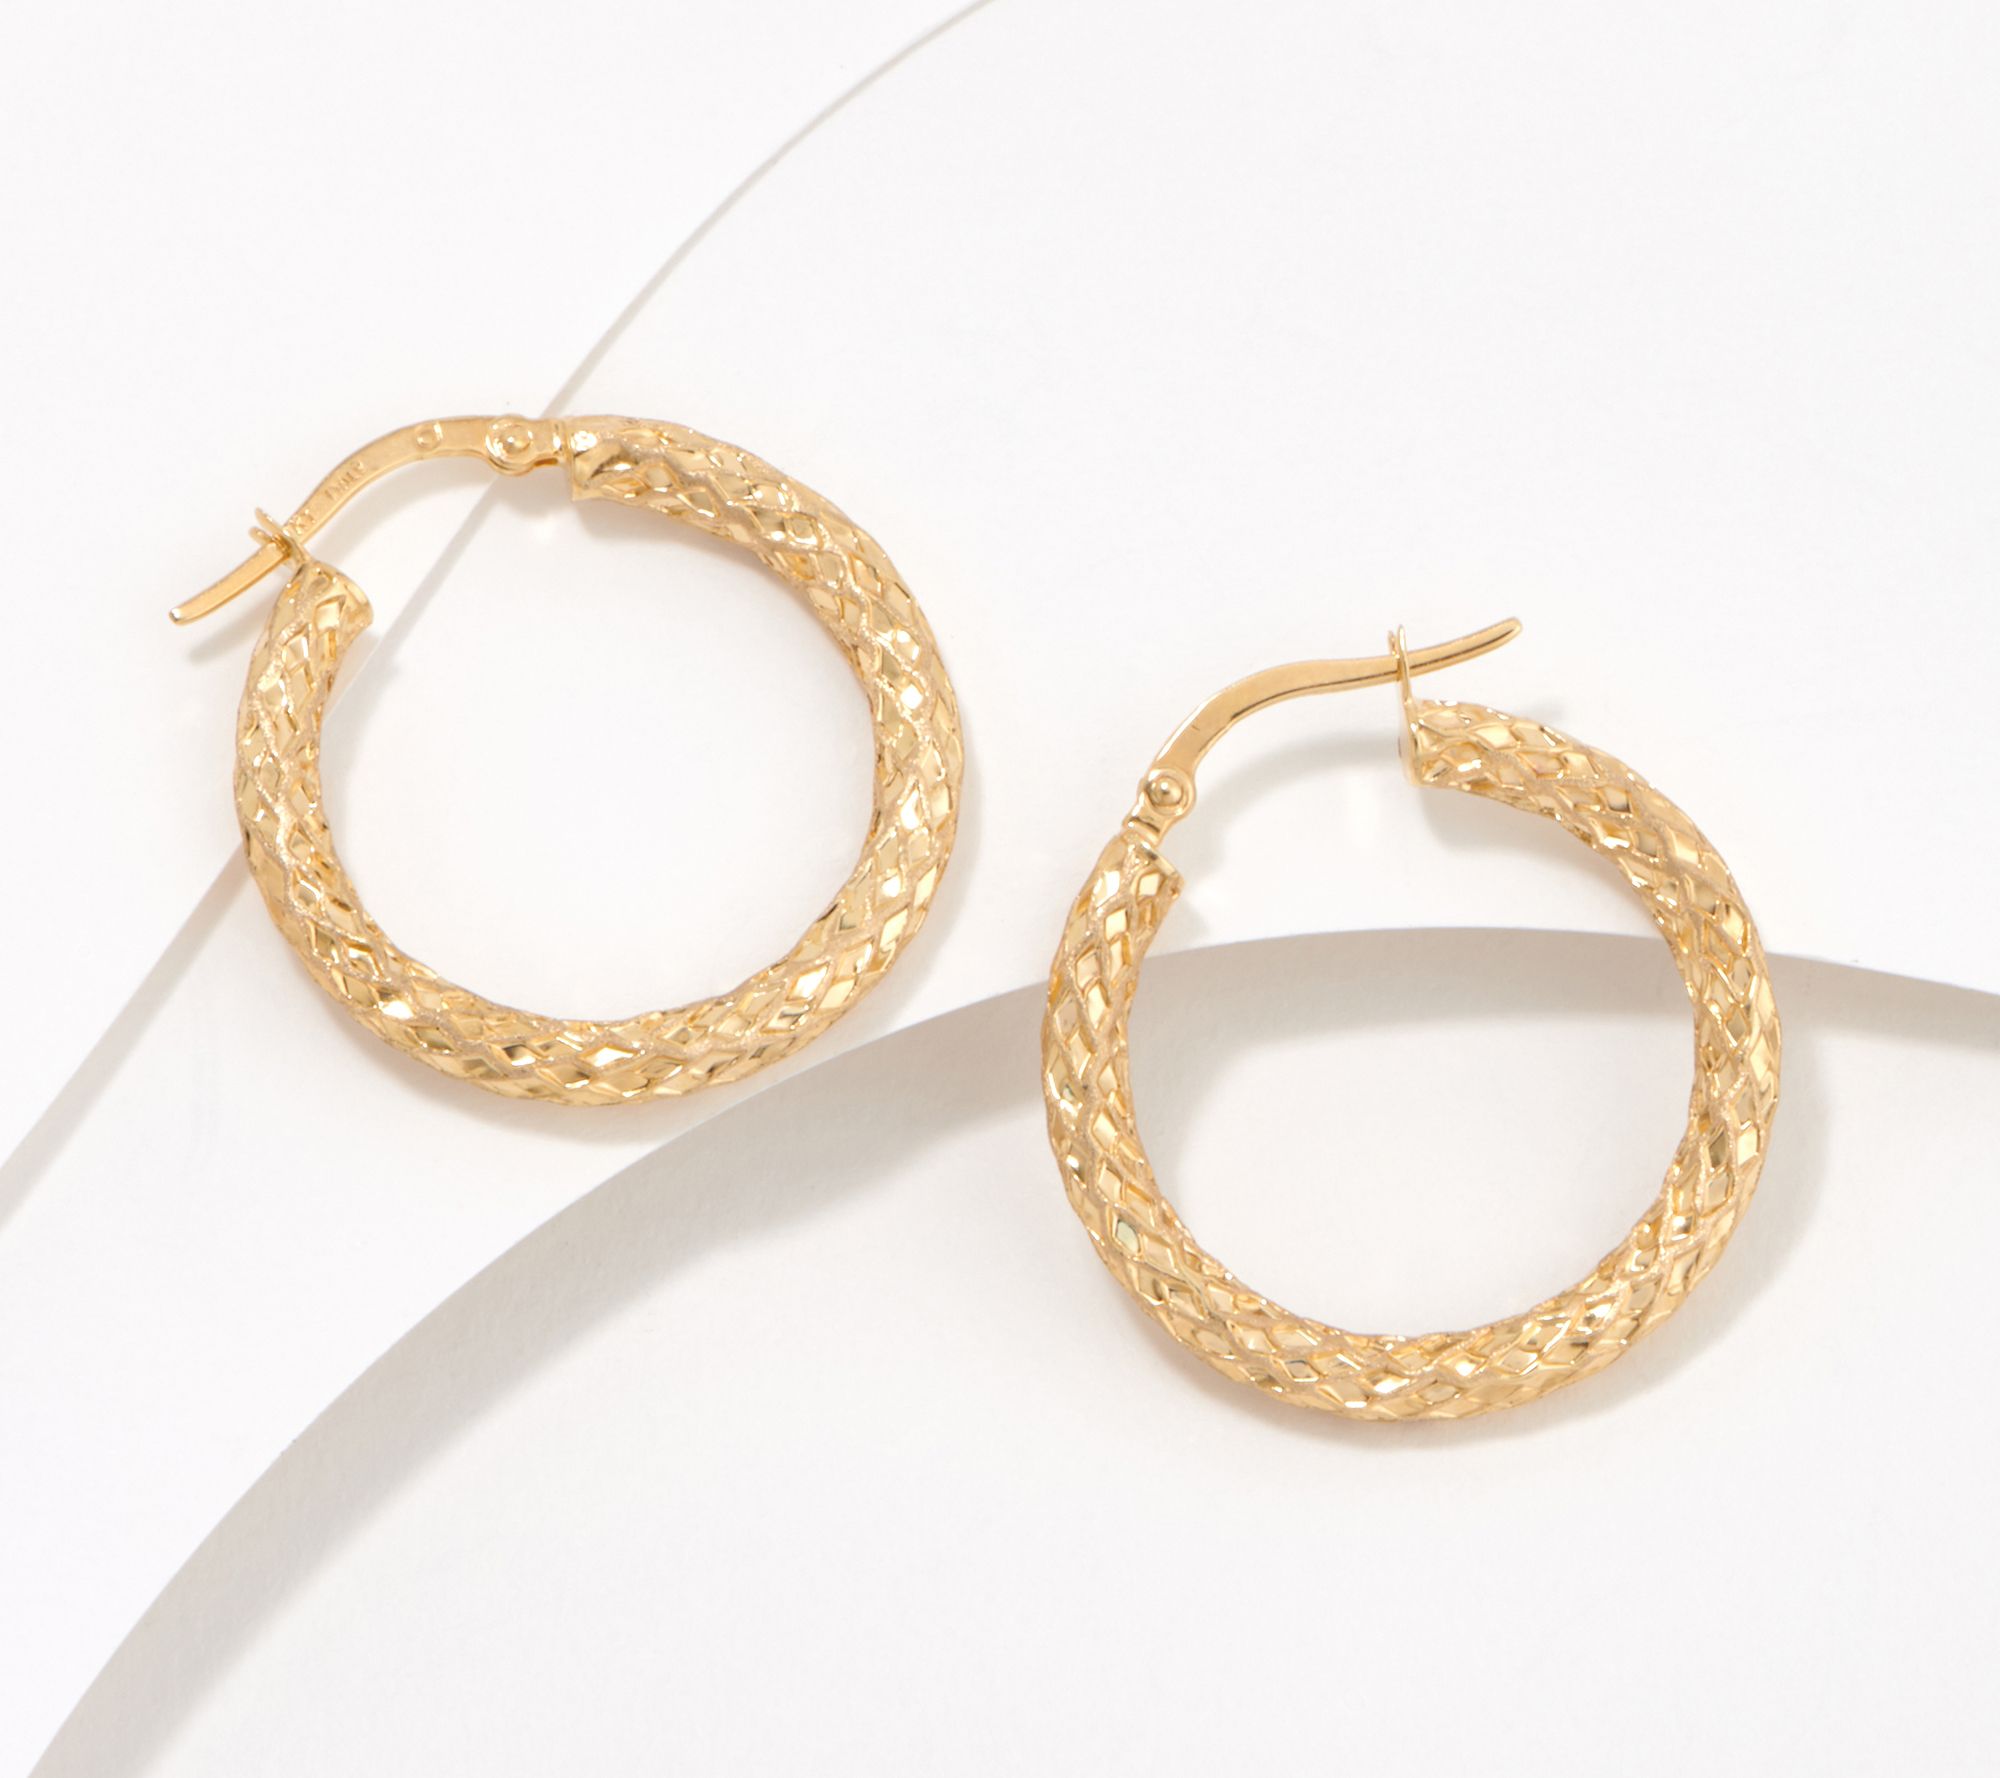 Mia Diamonds 10k Yellow Gold Patterned Hollow Hoop Earrings 18mm x 17mm